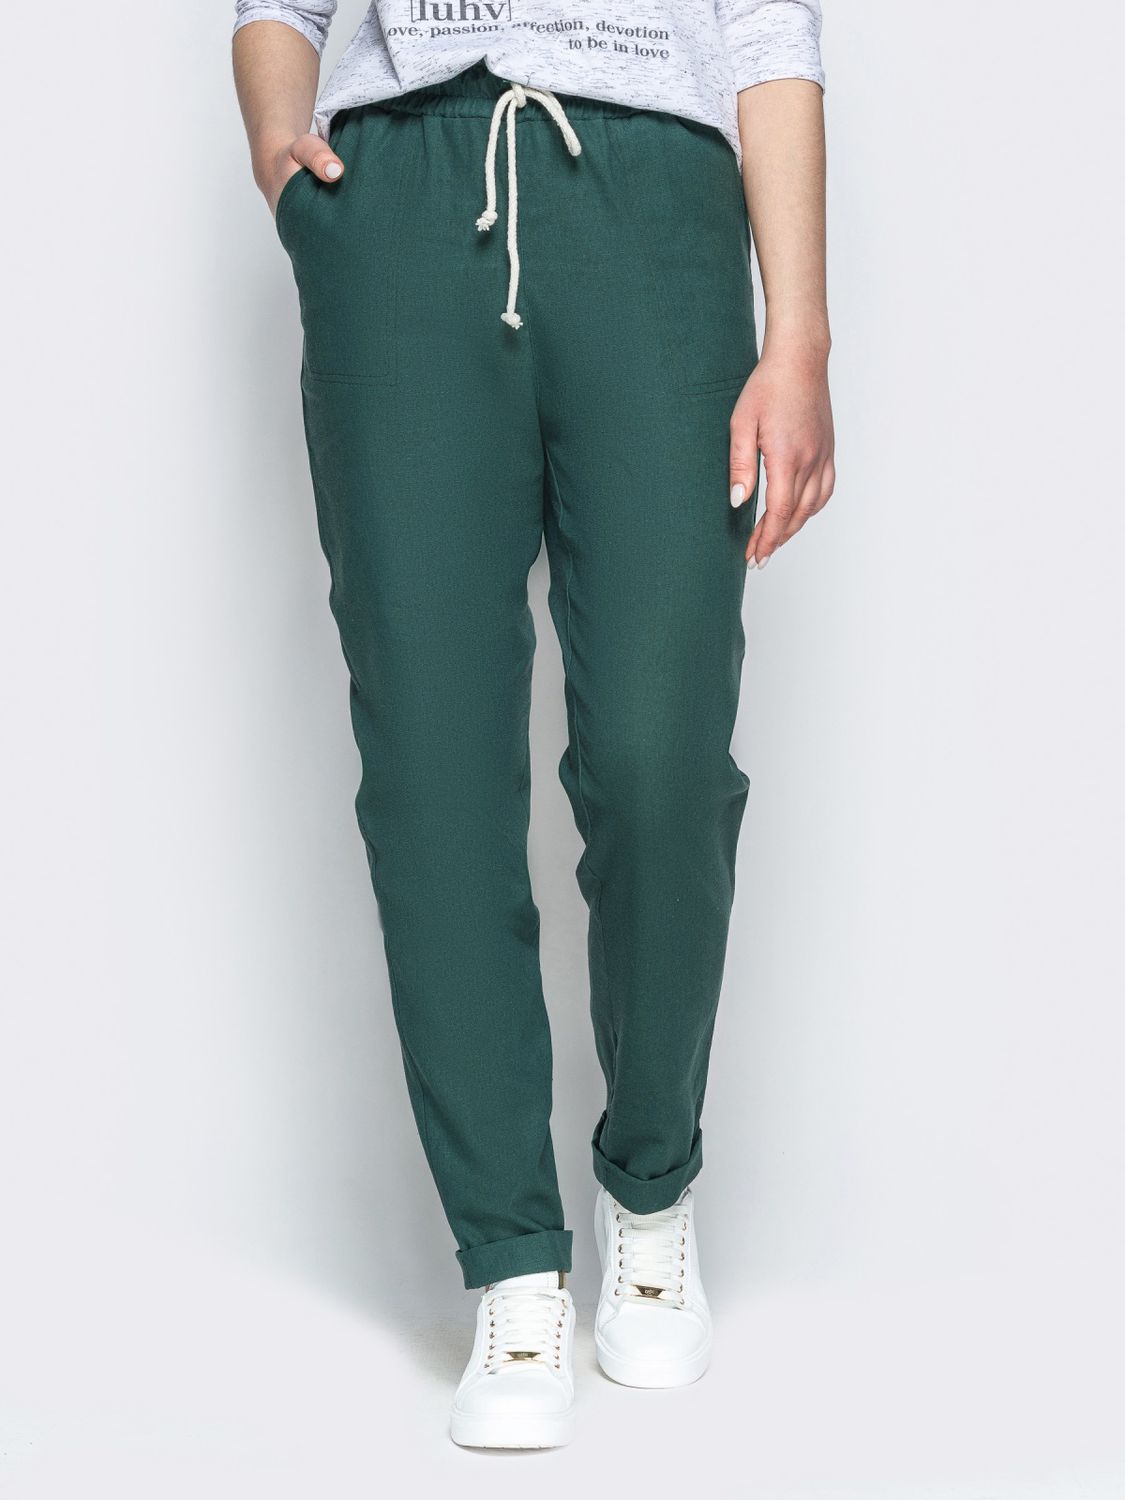 Льняные брюки на лето зеленого цвета - фото